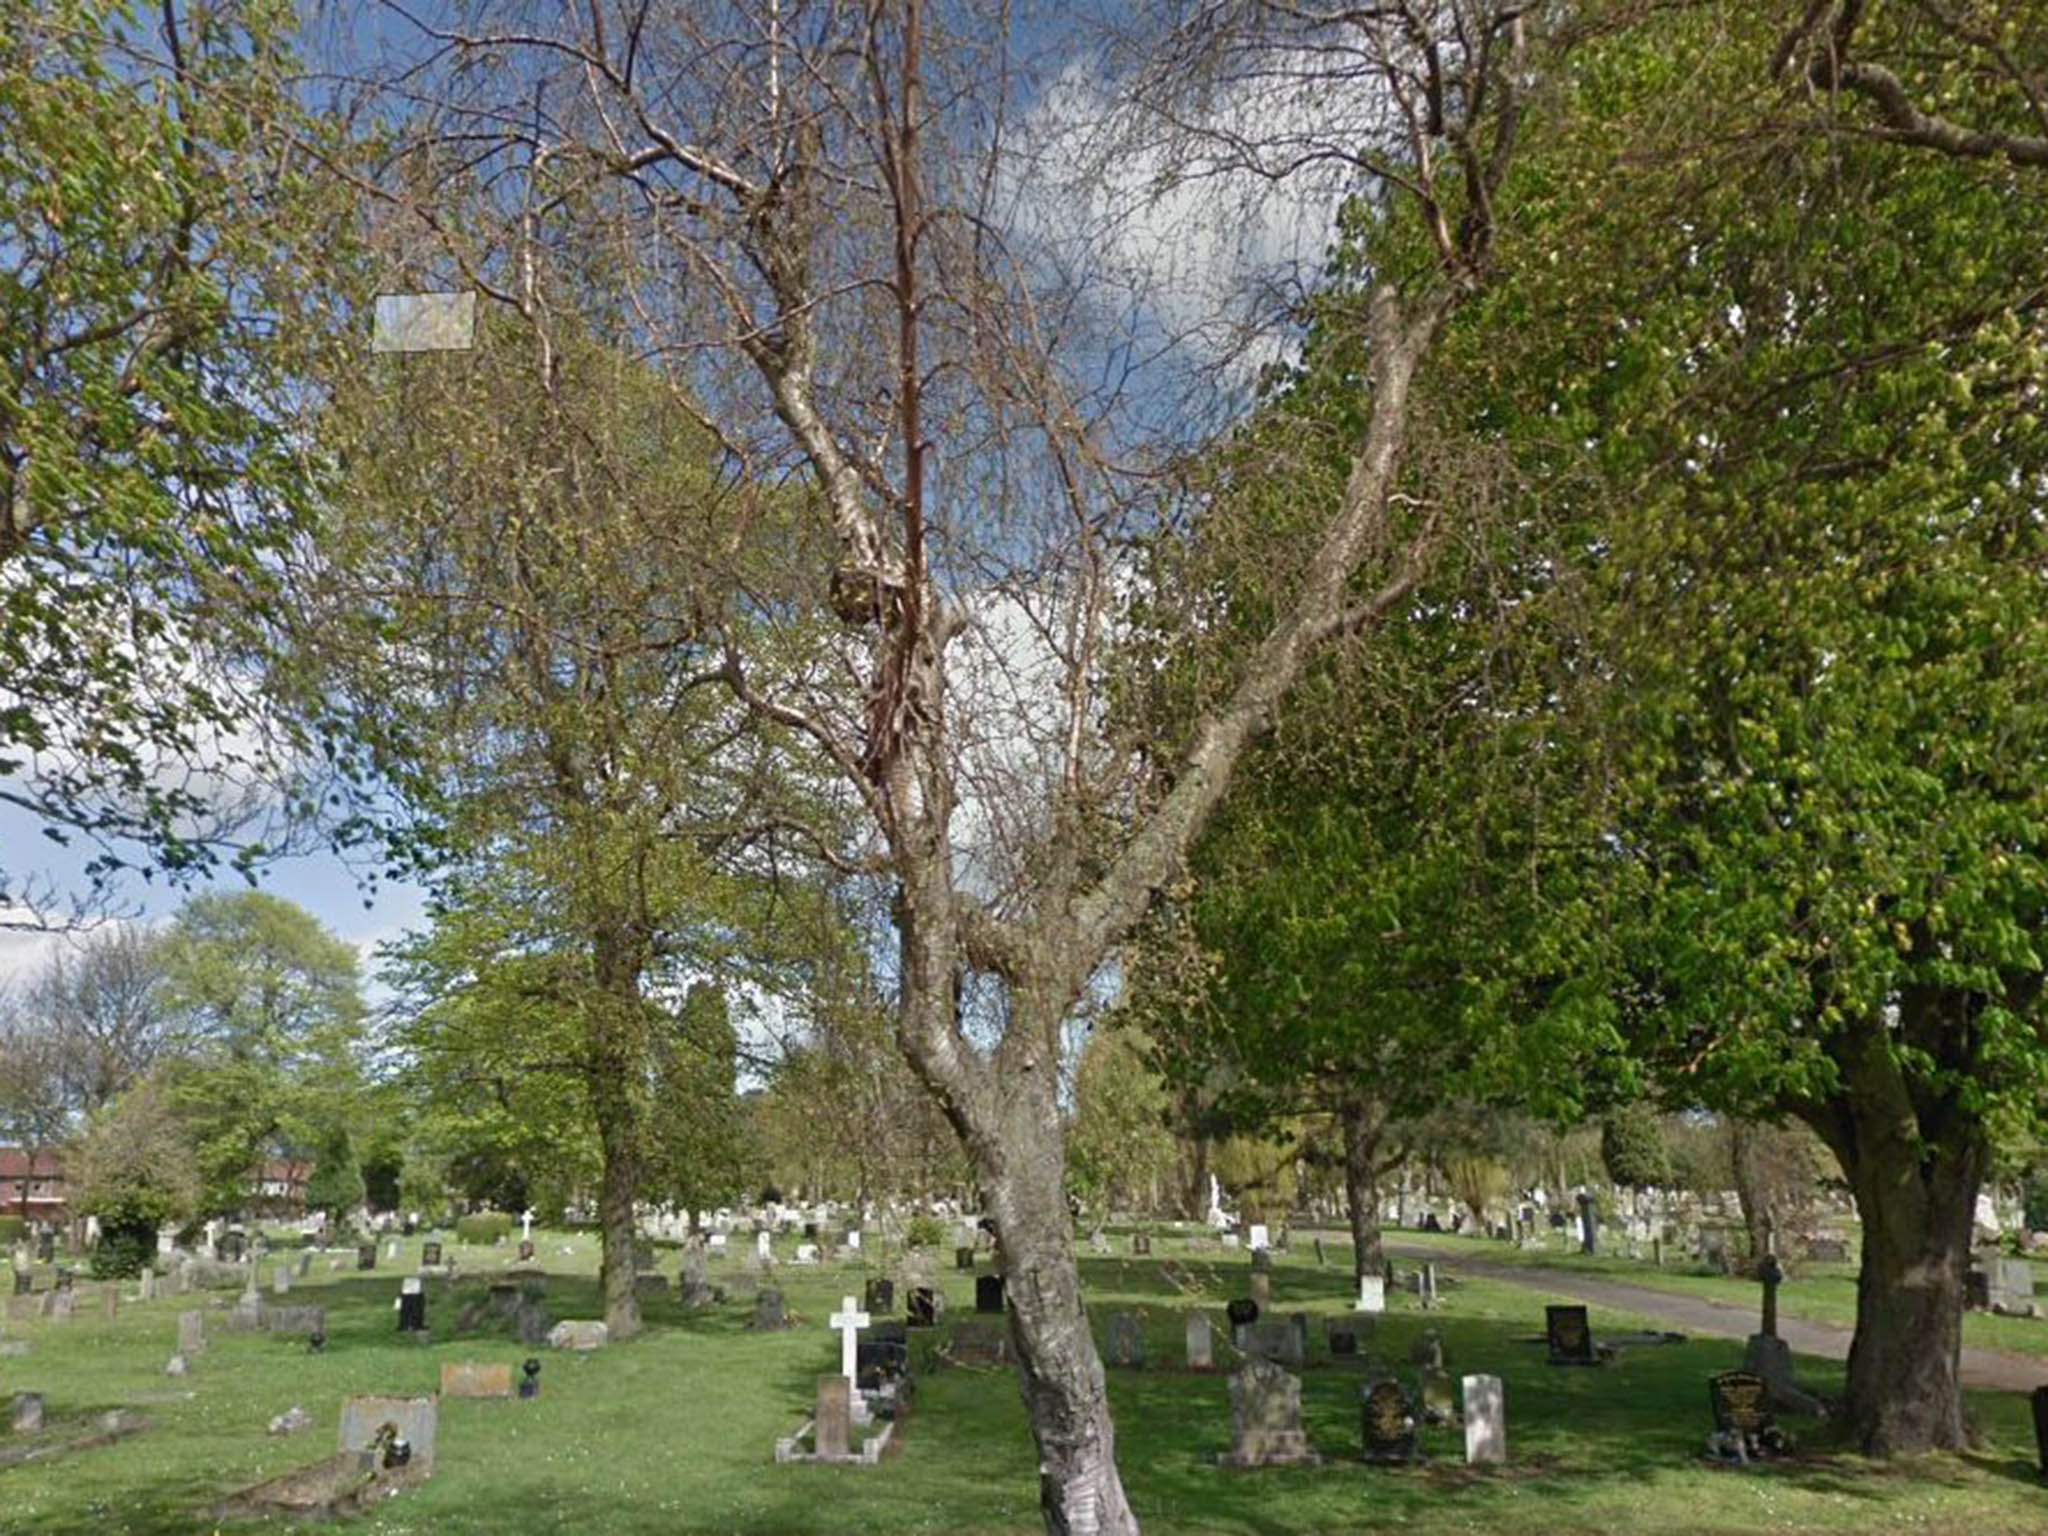 The man's body was found in Eston Cemetery